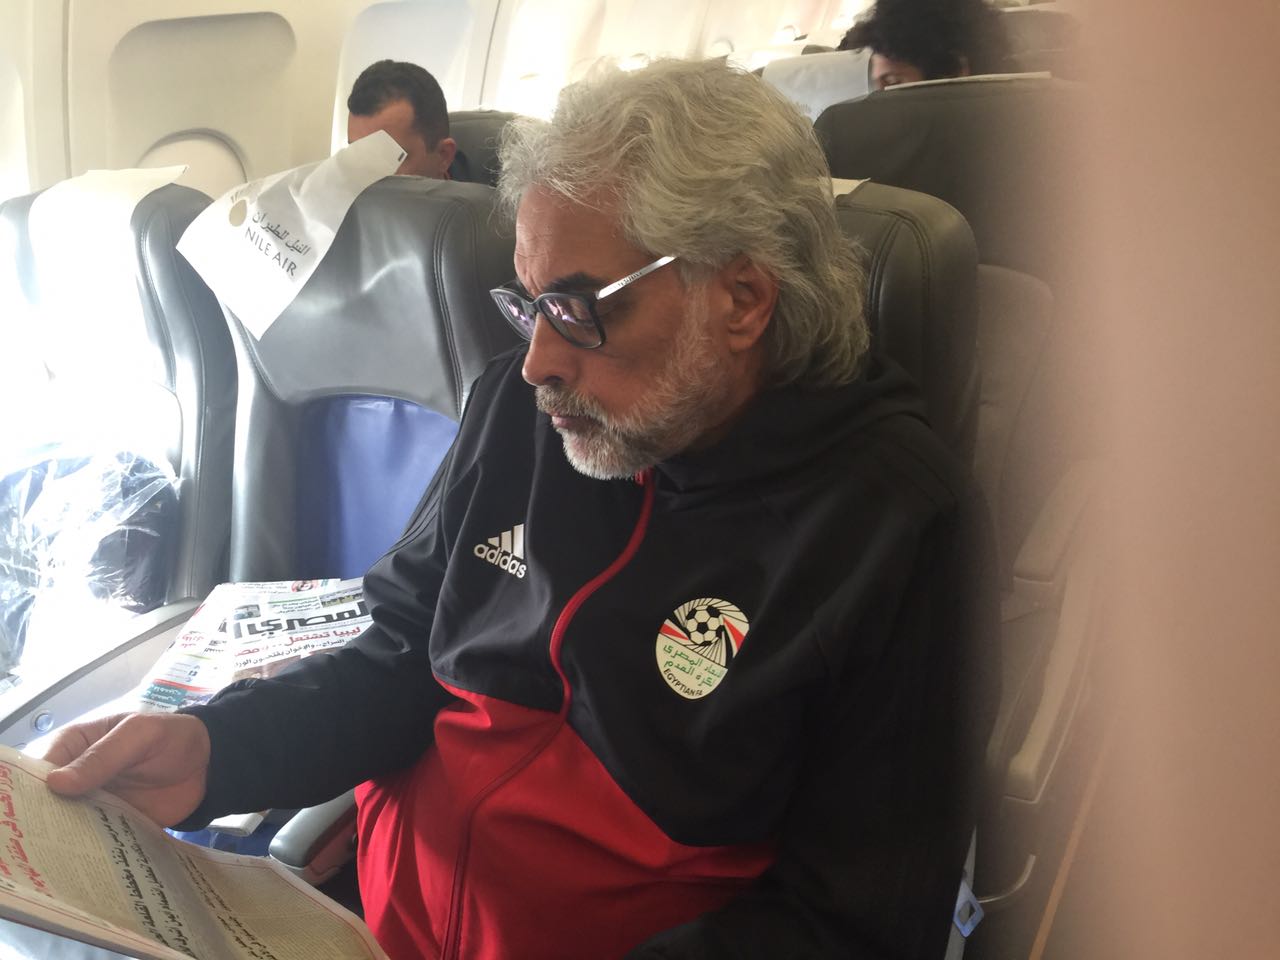 أحمد ناجى يطالع الصحف على متن الطائرة